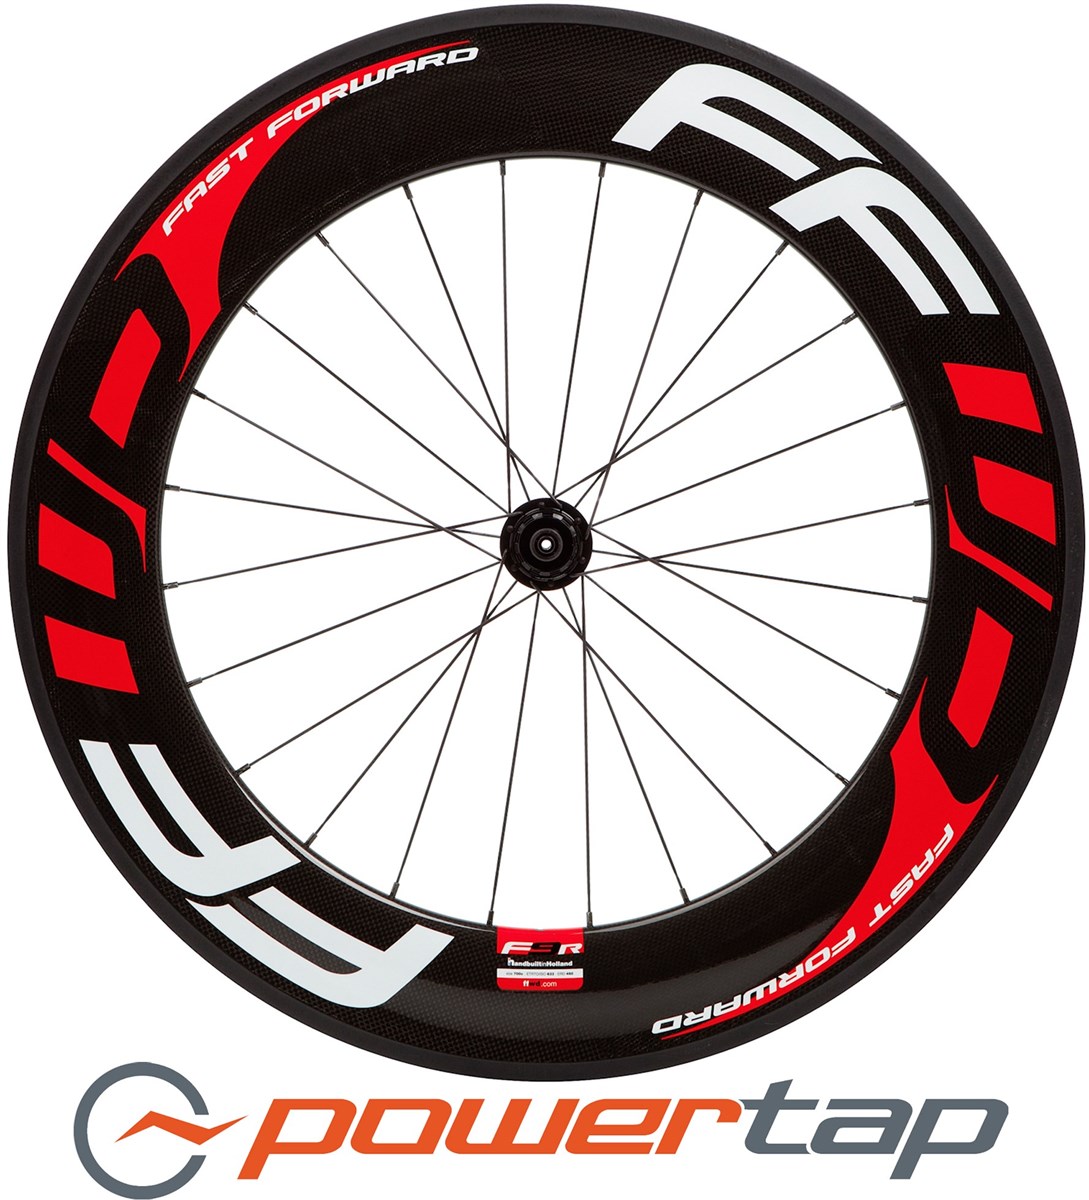 Fast Forward F9R PowerTap G3 Tubular Rear Road Wheel product image